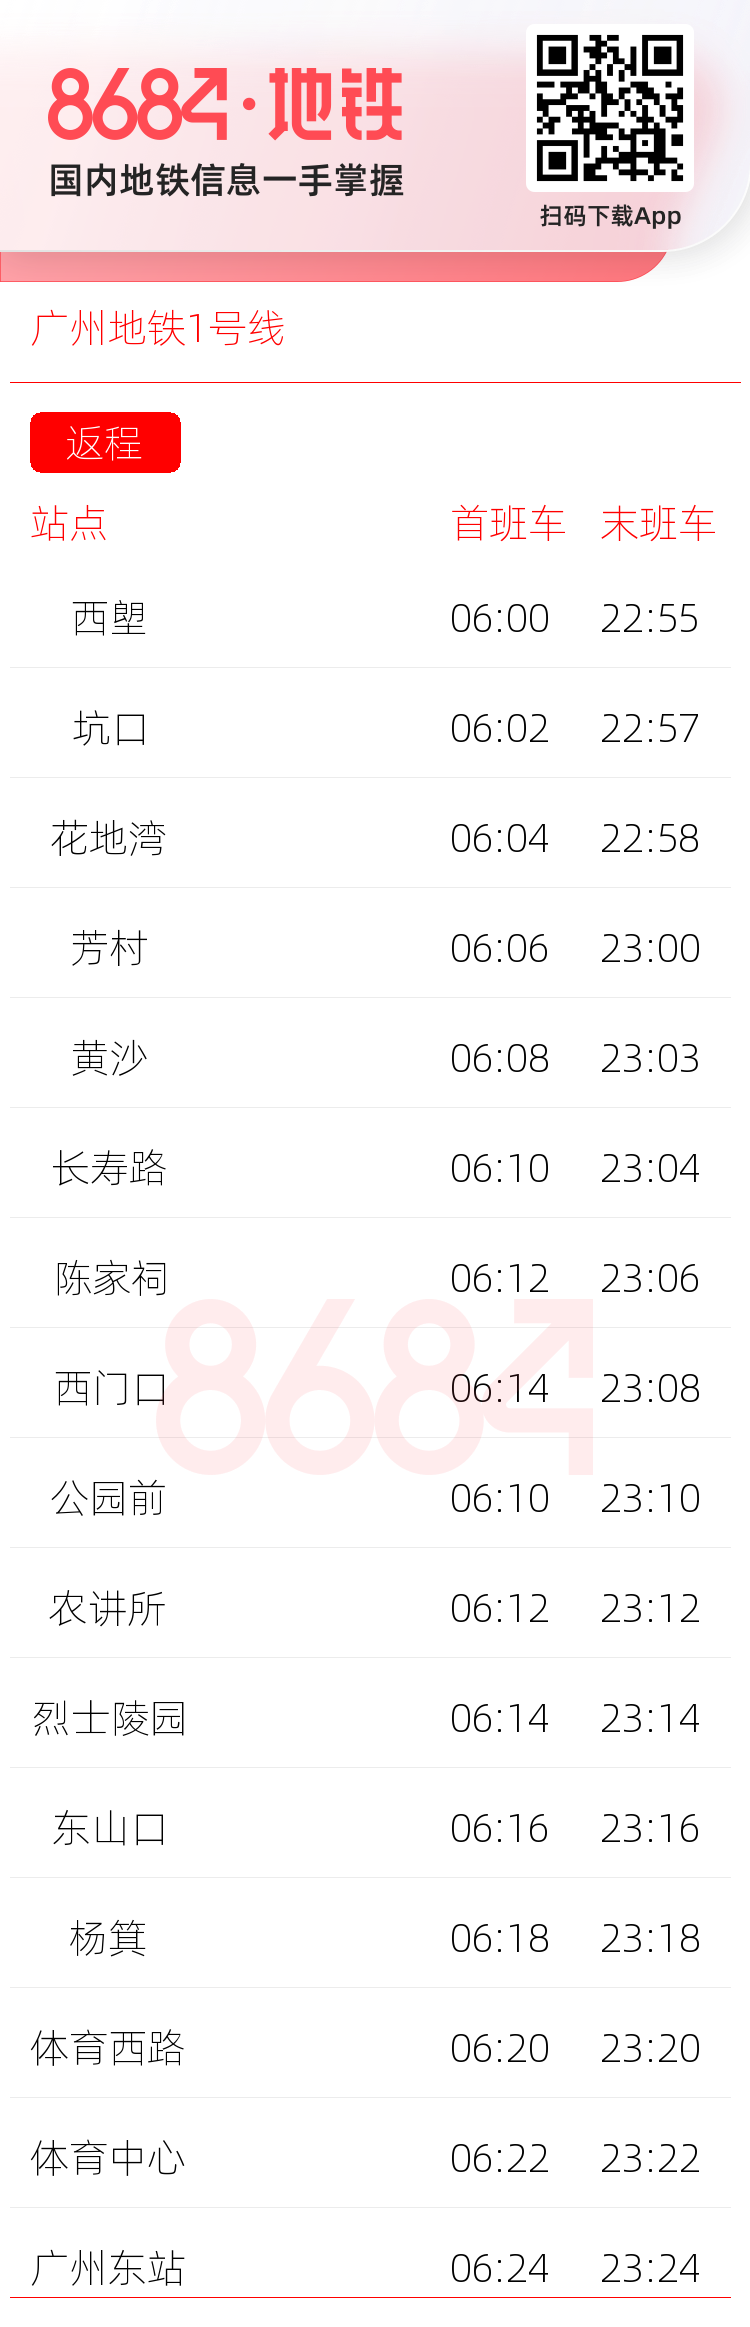 广州地铁1号线运营时间表